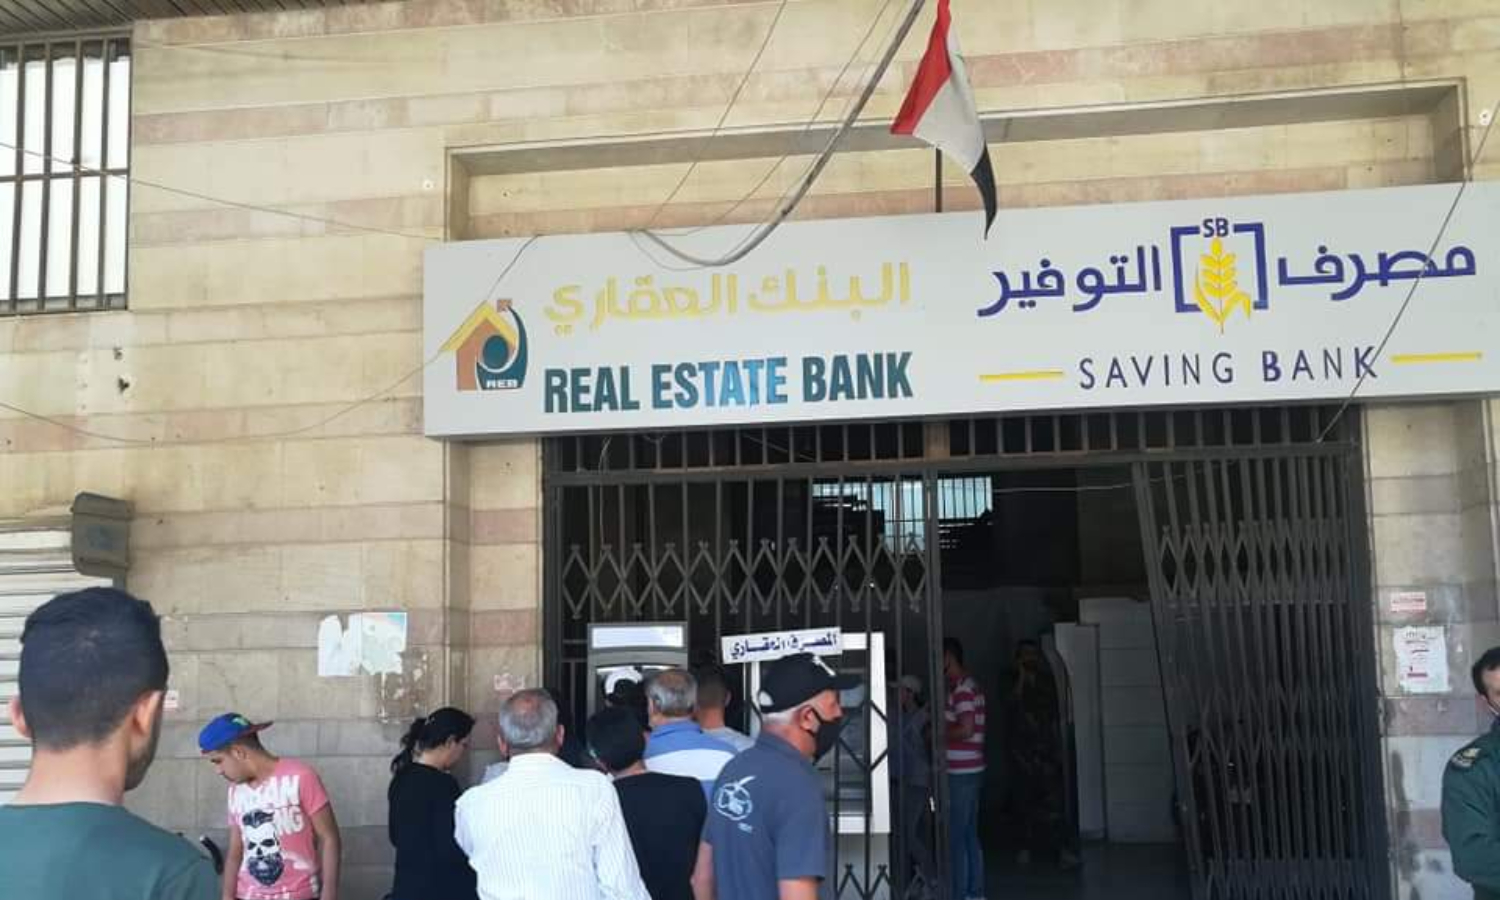 صرافات مشتركة لمصرفي "التوفير" و"العقاري" في حمص (تلفزيون الخبر المحلي)